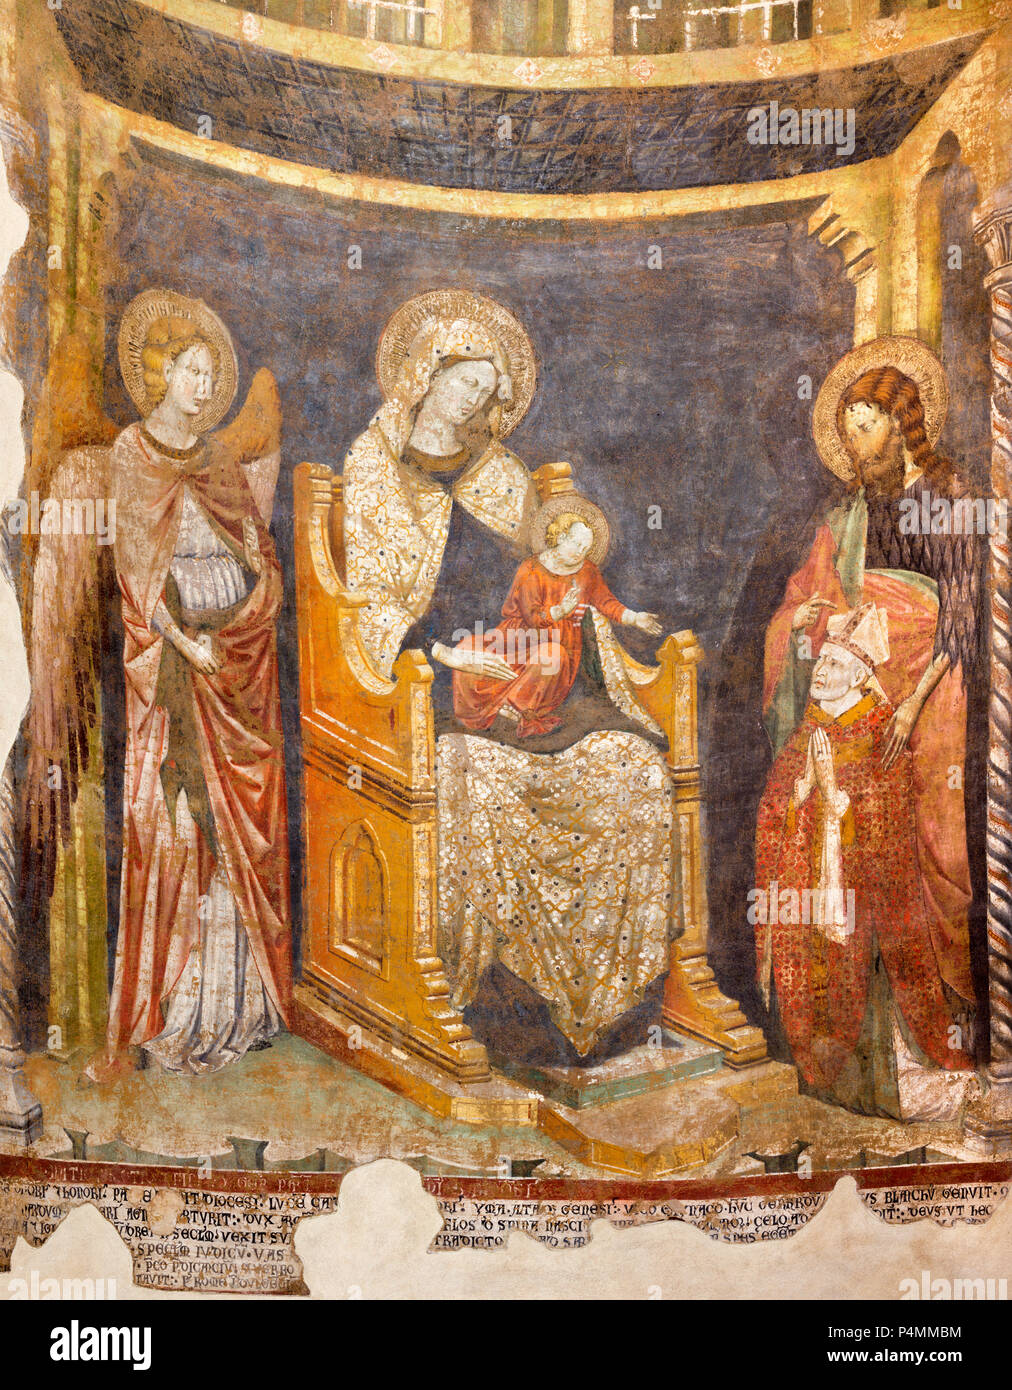 PARMA, Italien - 16. April 2018: Das Fresko der Madonna mit dem Kind, St. Johannes der Täufer und der Bischof in der Taufkapelle von 'Maestro del 1302". Stockfoto